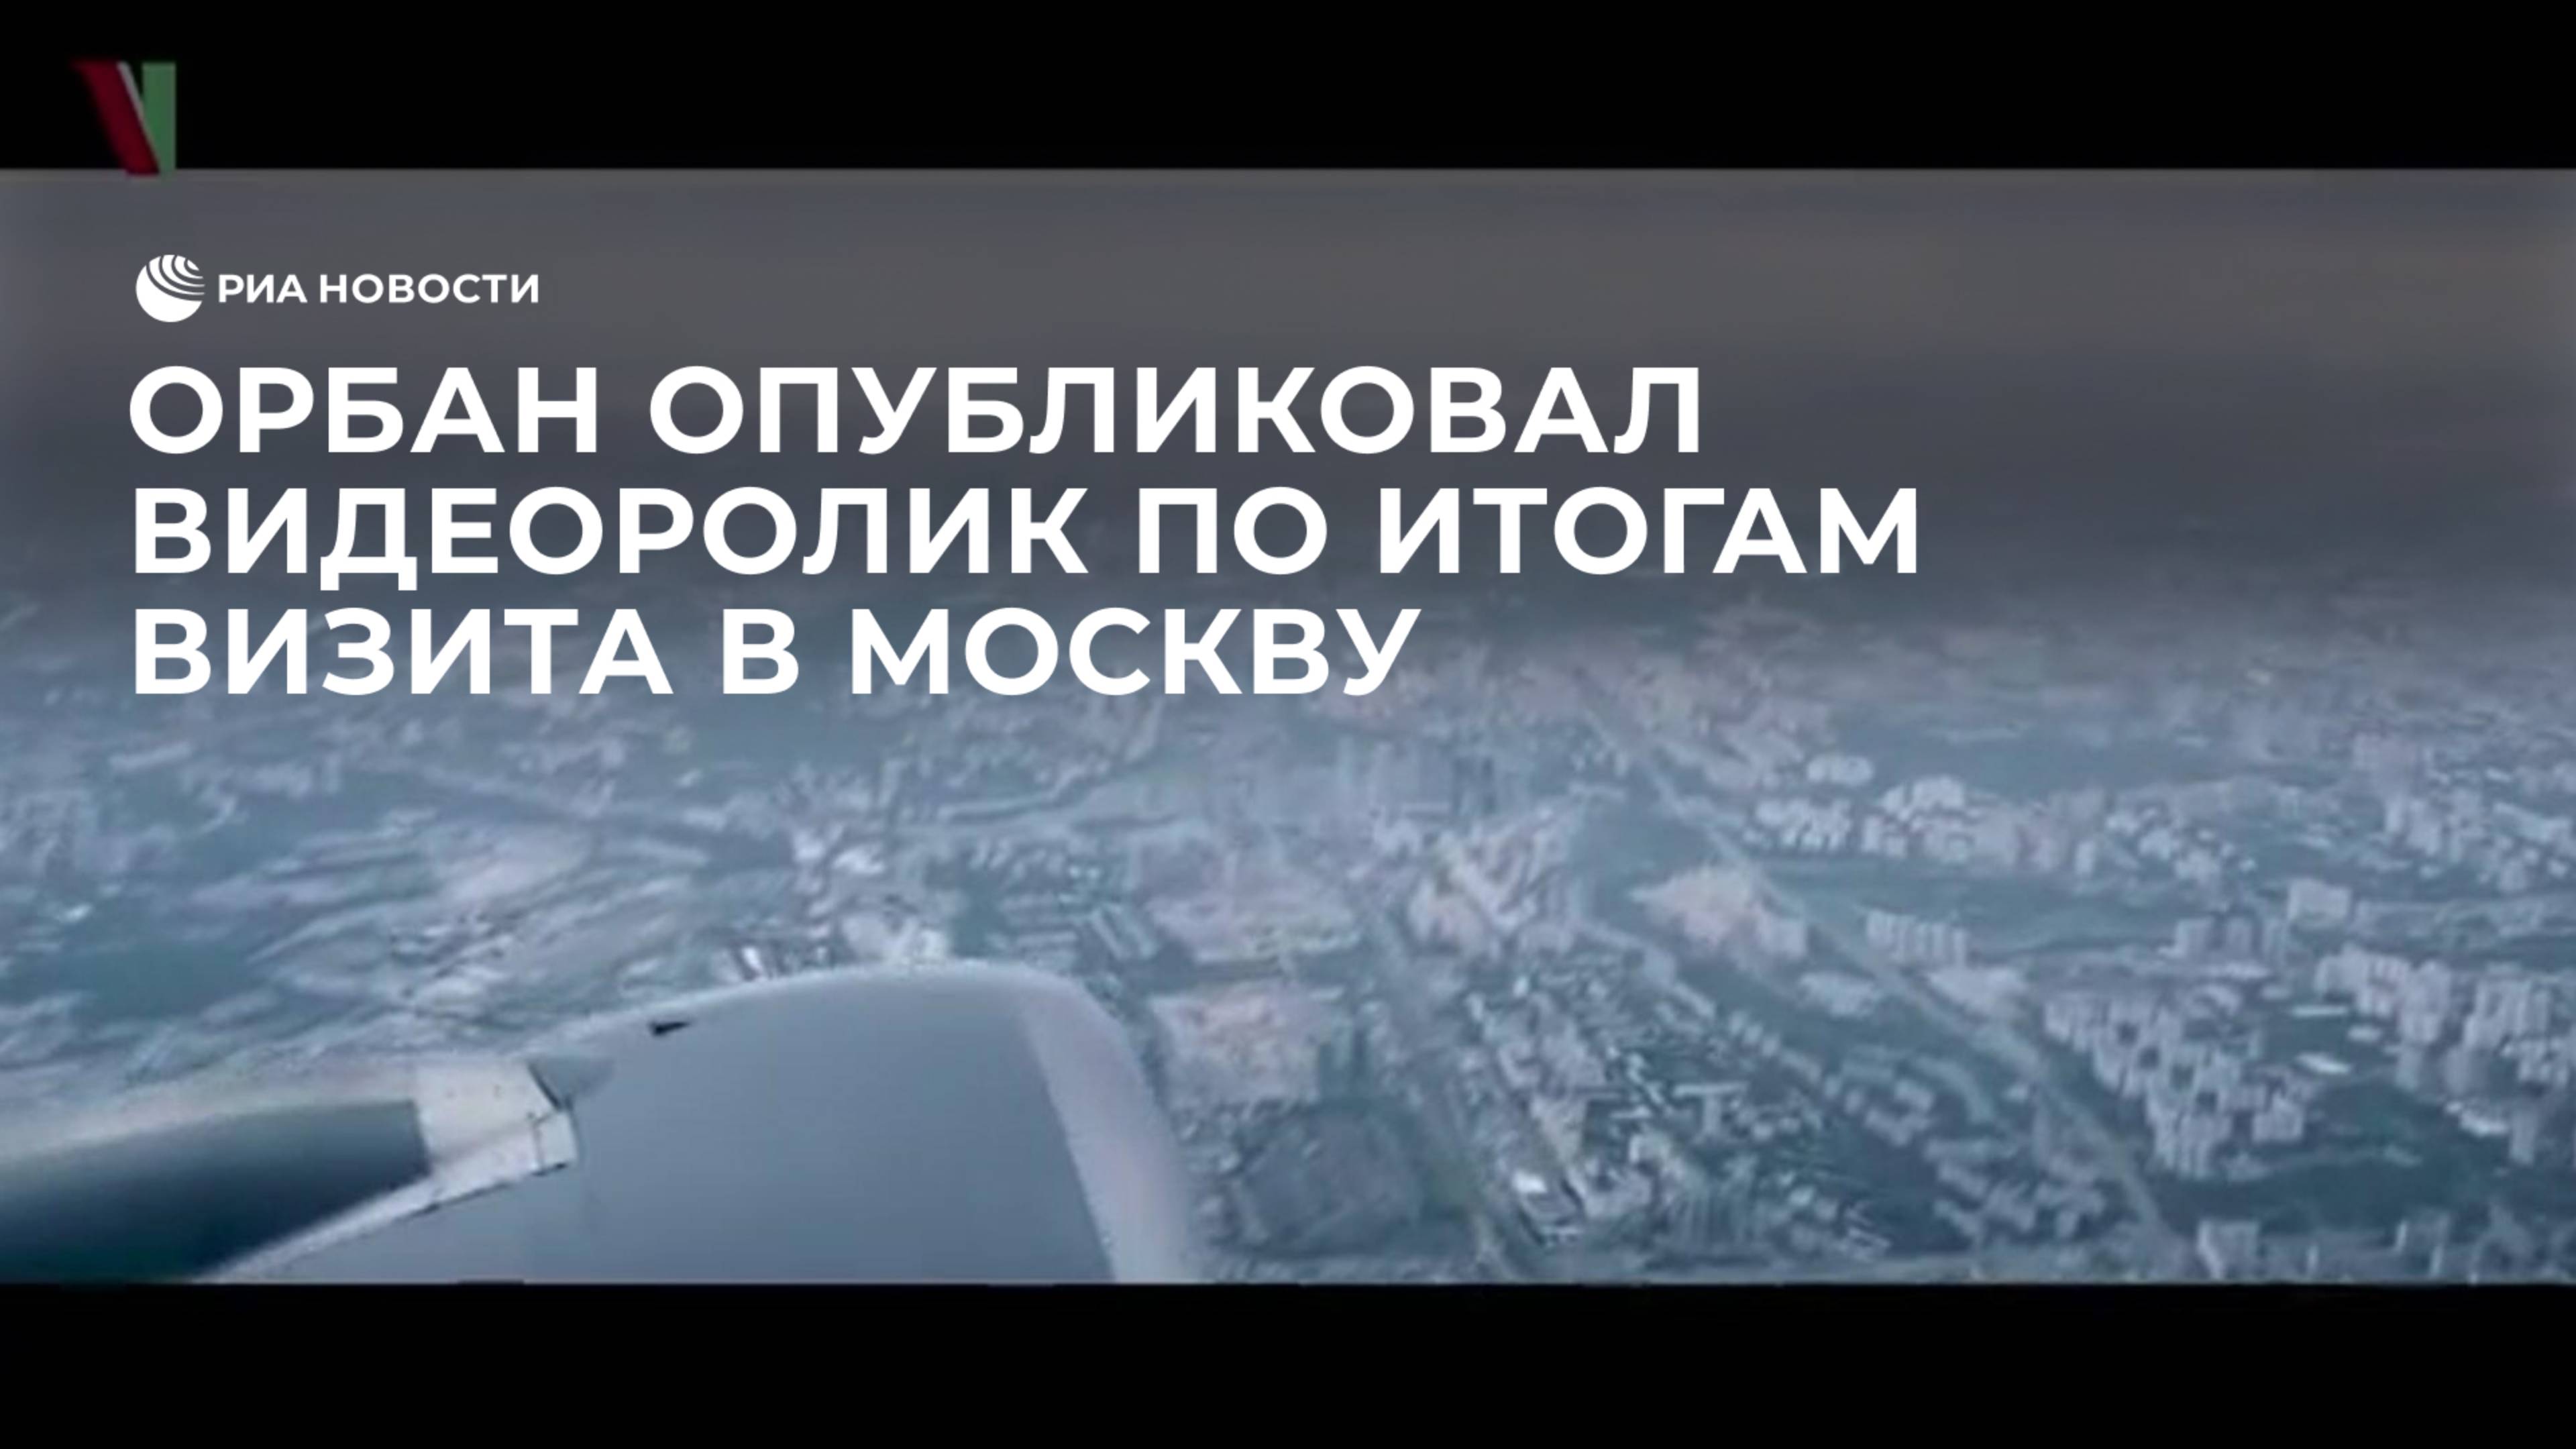 Орбан опубликовал видеоролик по итогам визита в Москву